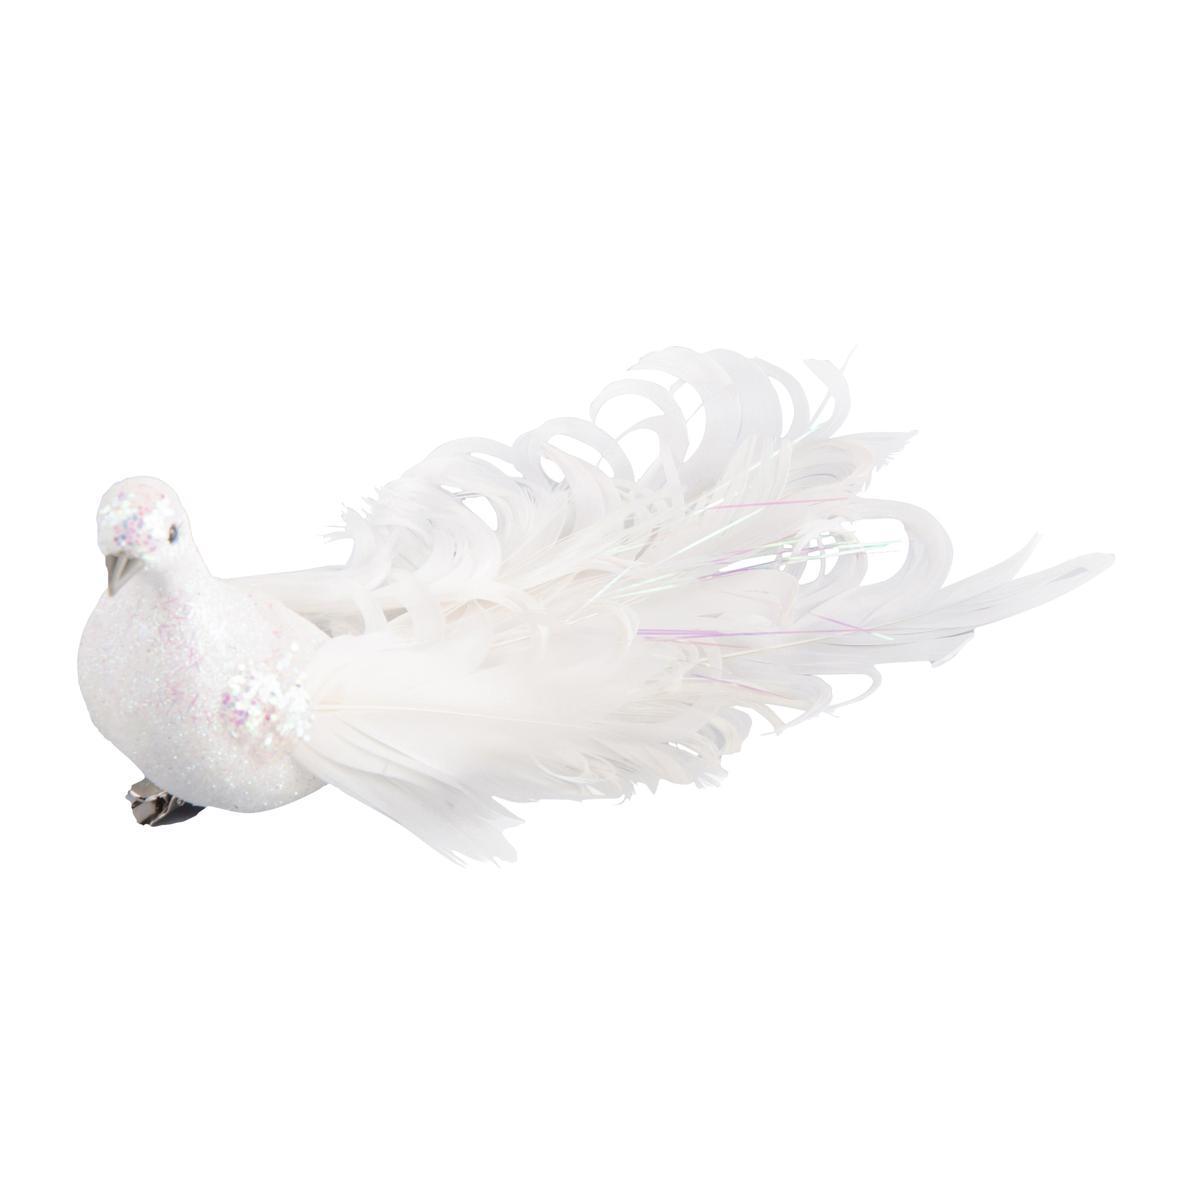 Pince colombe pailletée - Polystyrène et plumes - 20 x 6 x H 4,5 cm - Blanc